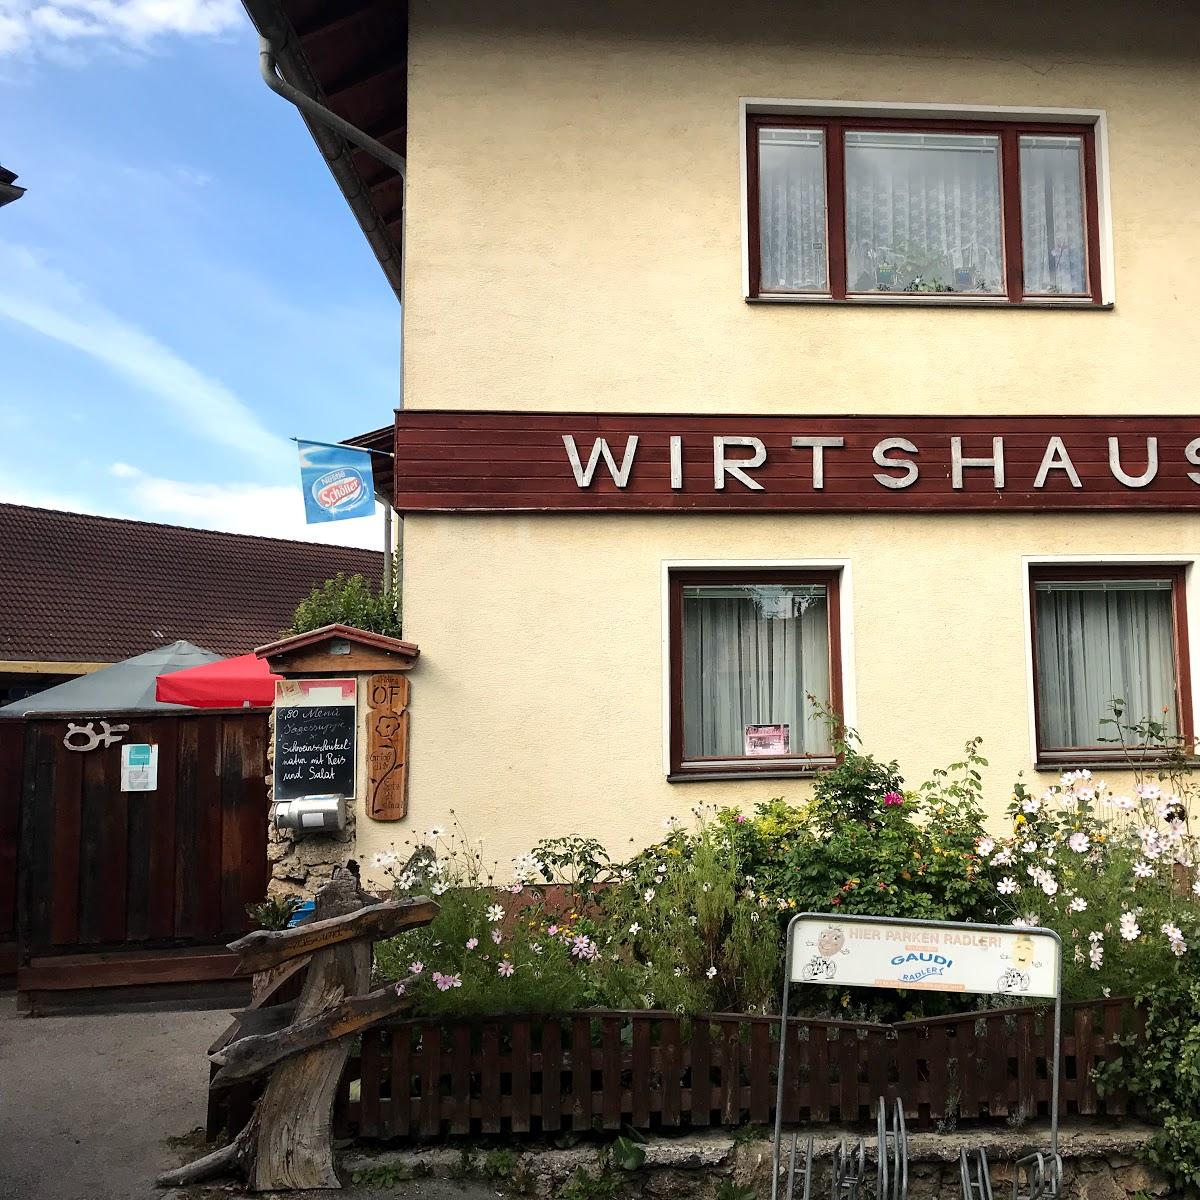 Restaurant "Wirtshaus Robert Krenn" in Pitten